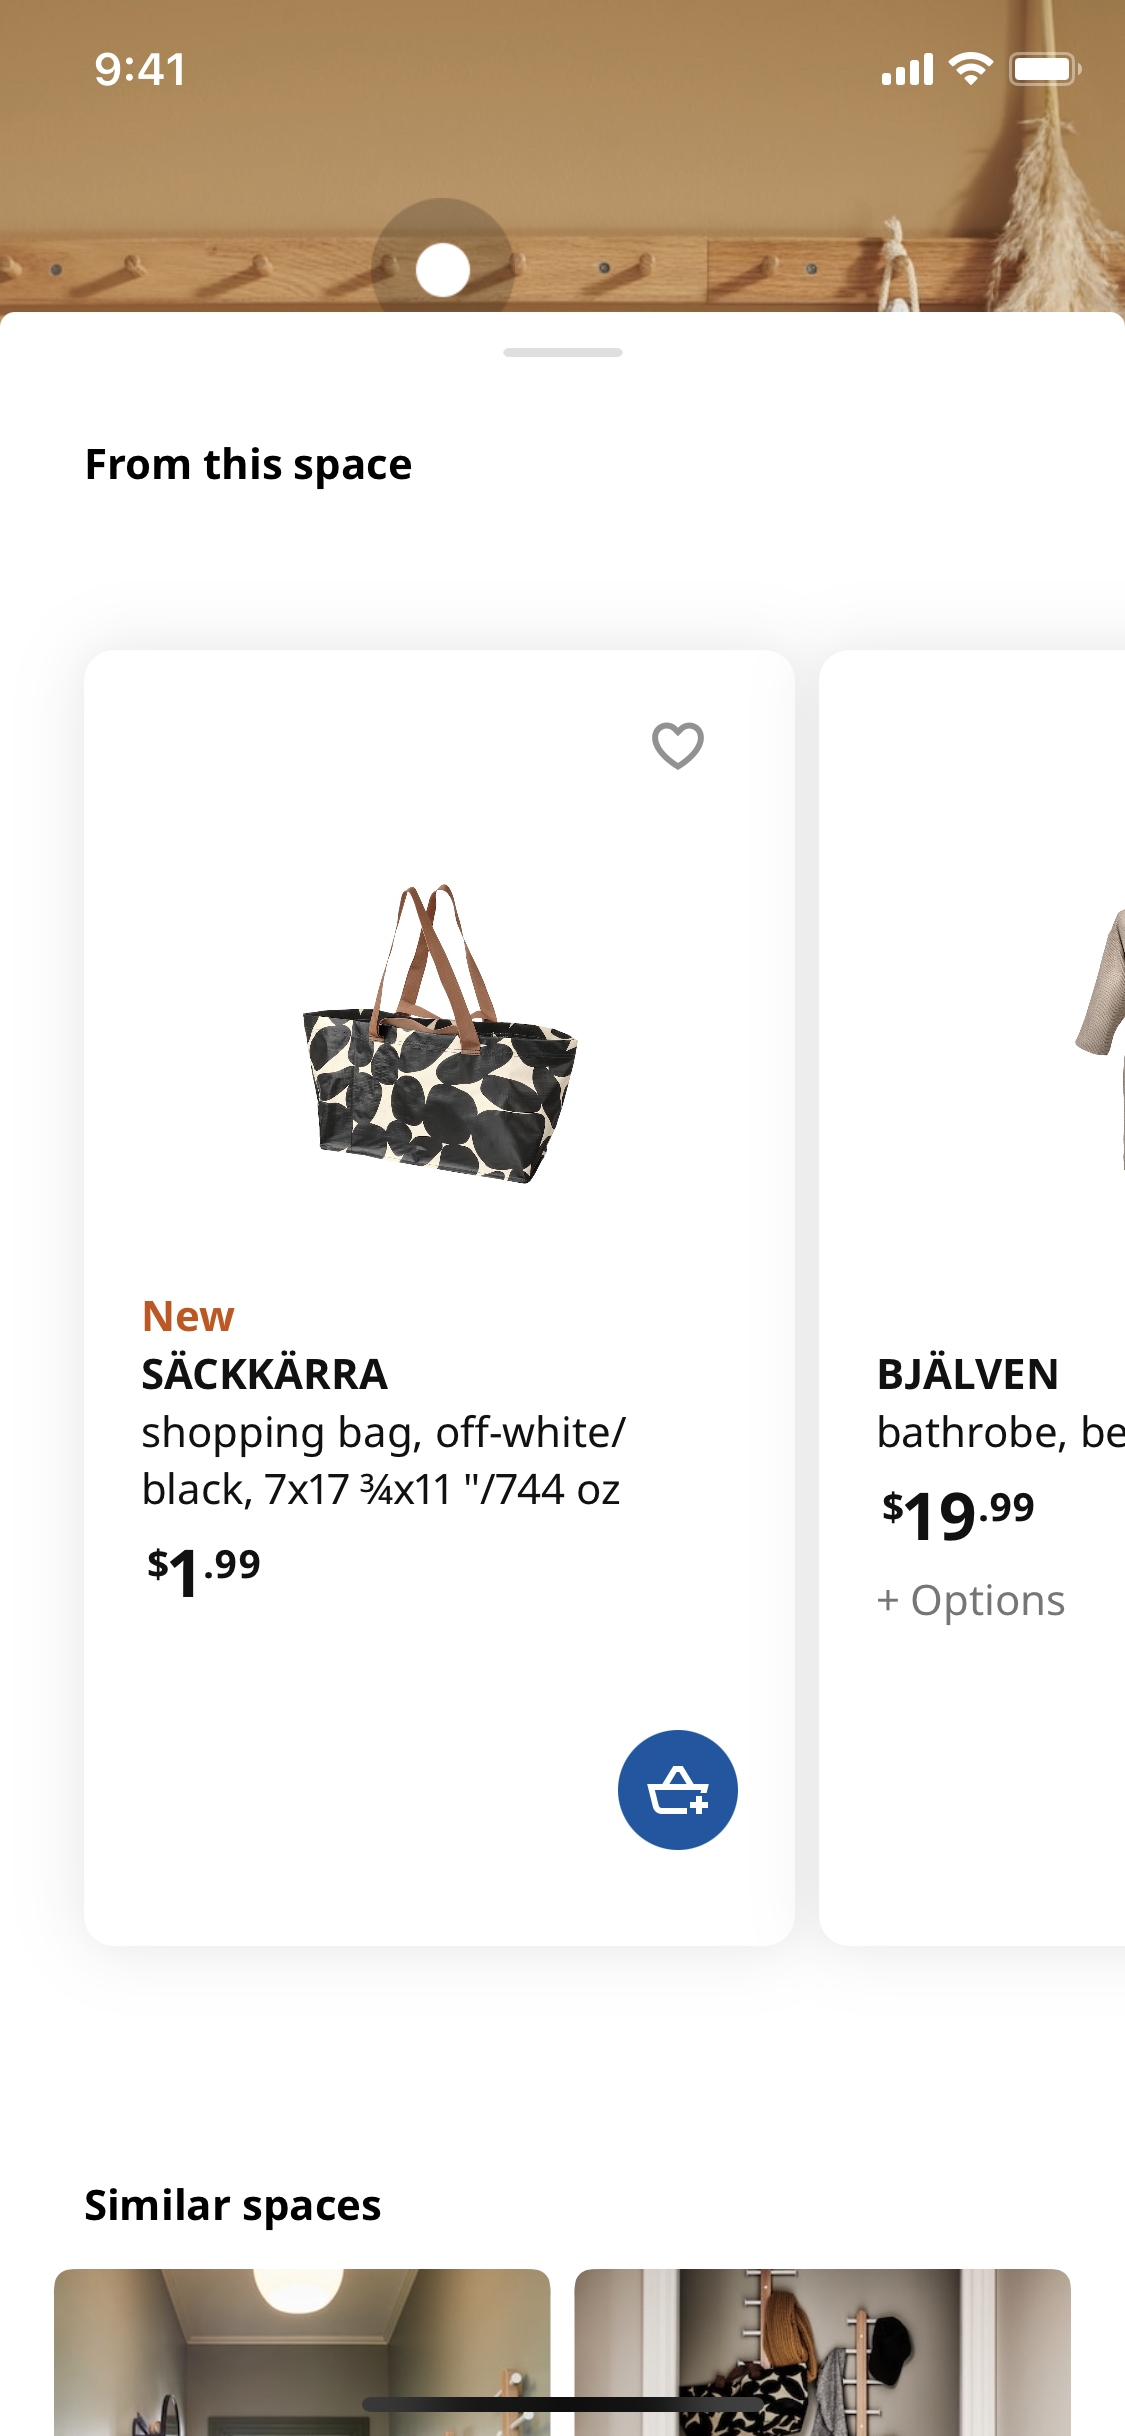 Ikea SACKKARRA Shopping bag tote off-white/black/brown, 744 oz